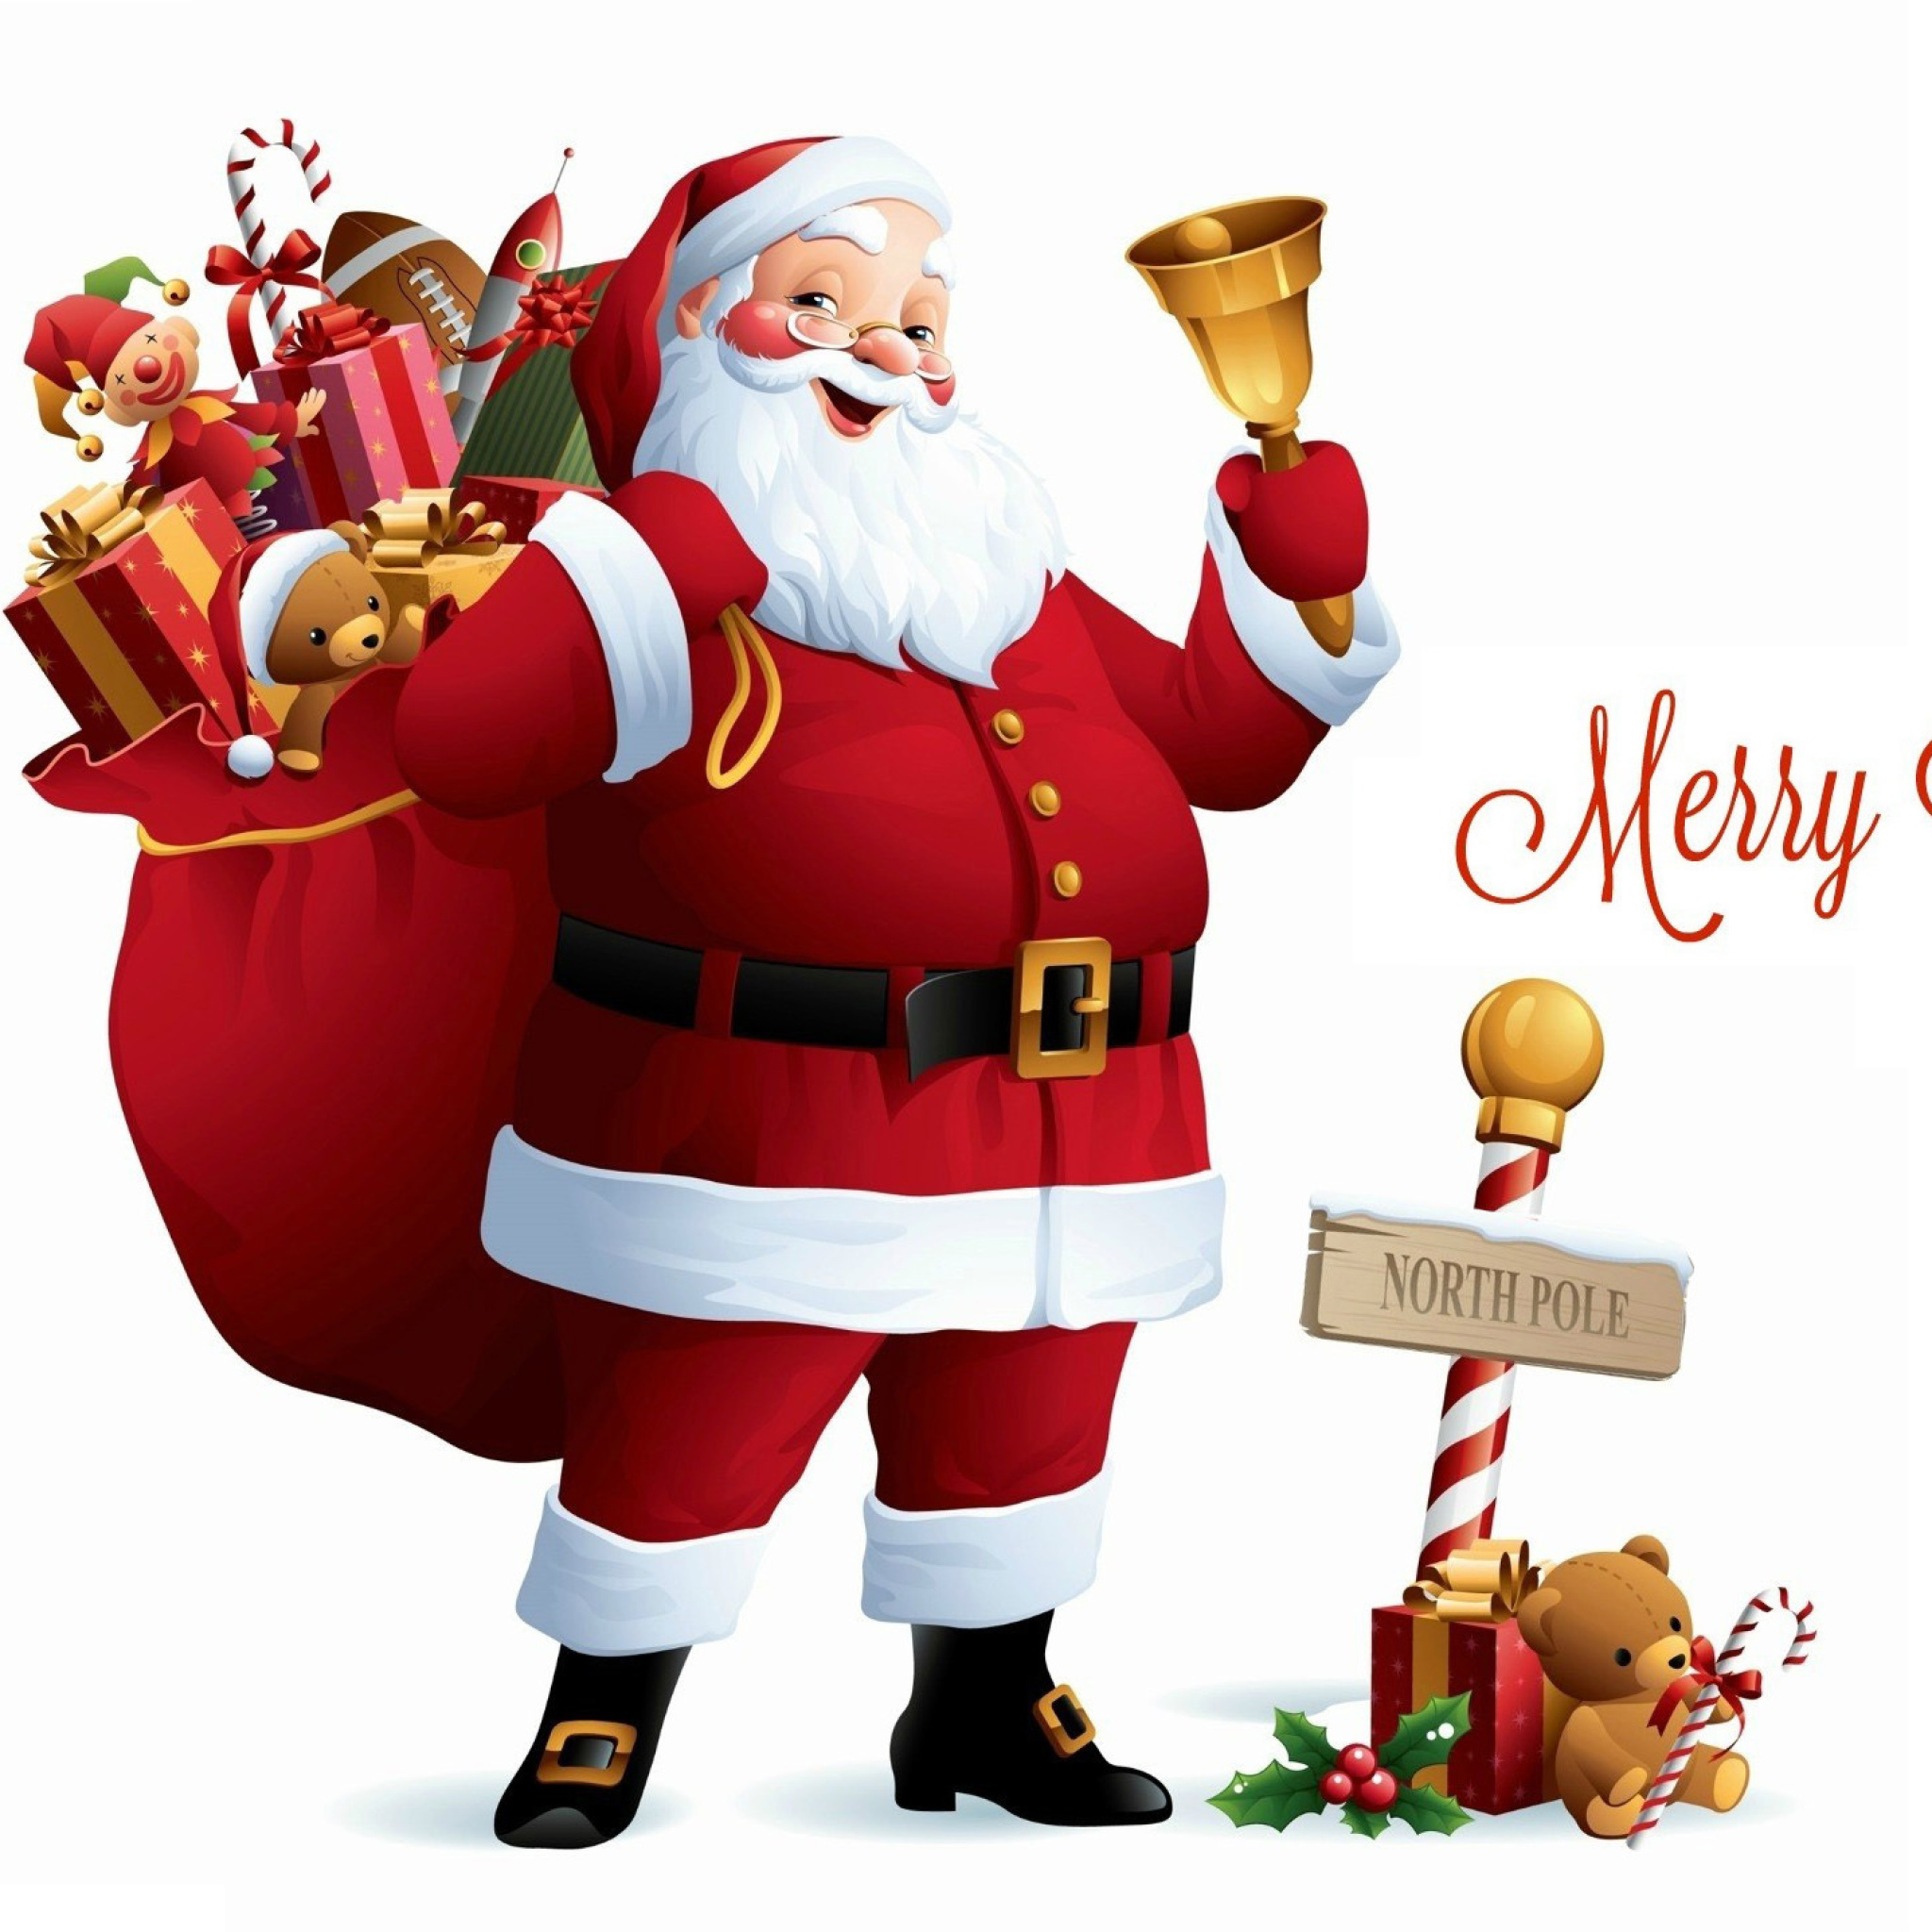 HO HO HO Merry Christmas Santa Claus wallpaper 2048x2048